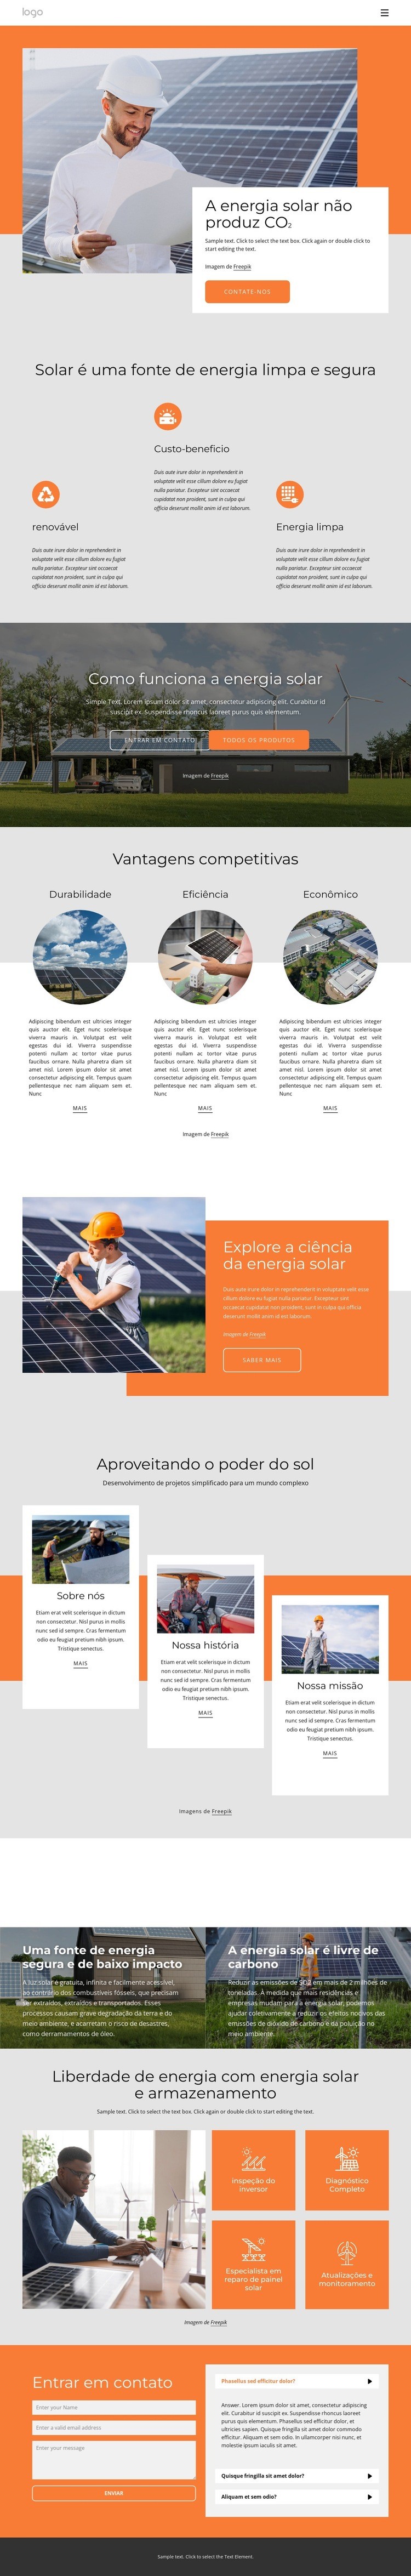 Alimente sua casa com energia solar limpa Modelo HTML5